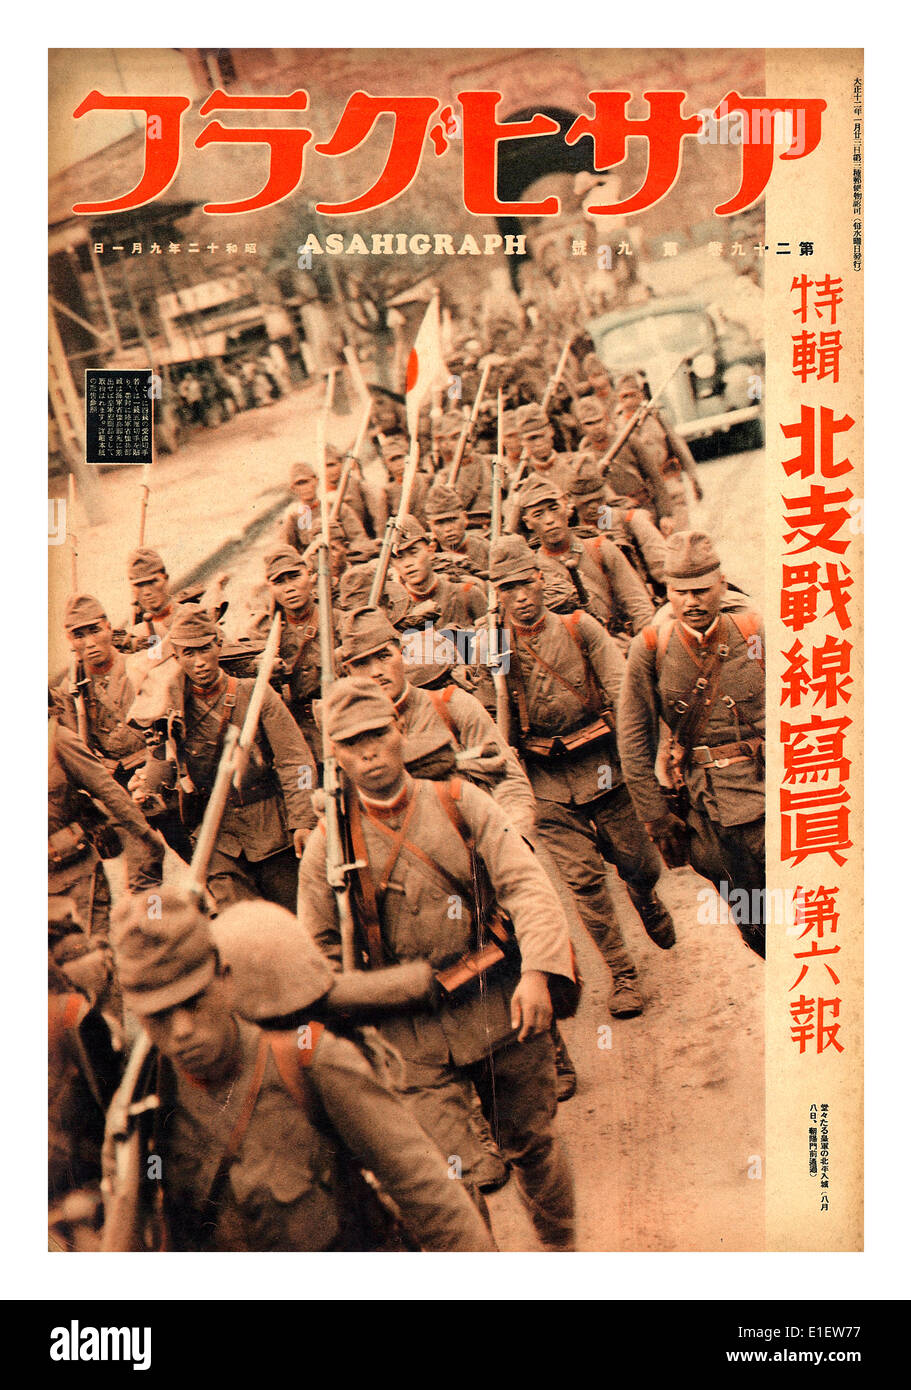 Vintage 1940 AsahiGraph magazine japonais avec WW2 armée japonaise notoire des troupes militaires marching illustration de couverture avant la Seconde Guerre mondiale Banque D'Images